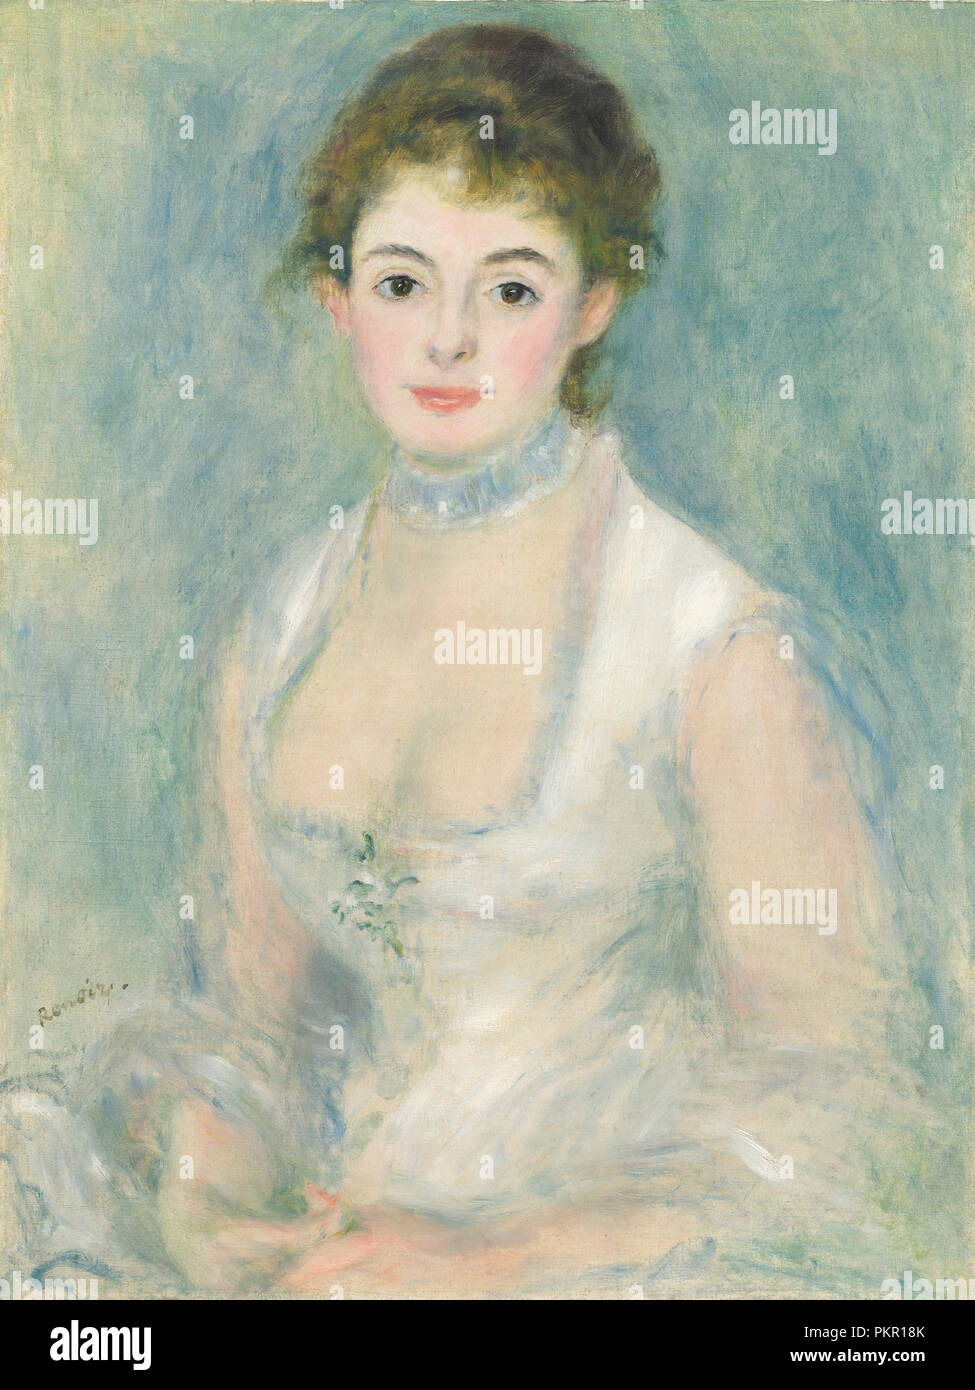 Madame Henriot. Data: c. 1876. Dimensioni: superficie dipinta: 65,8 x 49,5 cm (25 7/8 x 19 1/2 in.) barella dimensioni: 68,8 x 53,6 cm (27 1/16 x 21 1/8 in.) incorniciato: 102,9 x 87 cm (40 1/2 x 34 1/4 in.). Medium: olio su tela. Museo: National Gallery of Art di Washington DC. Autore: Auguste Renoir. Foto Stock